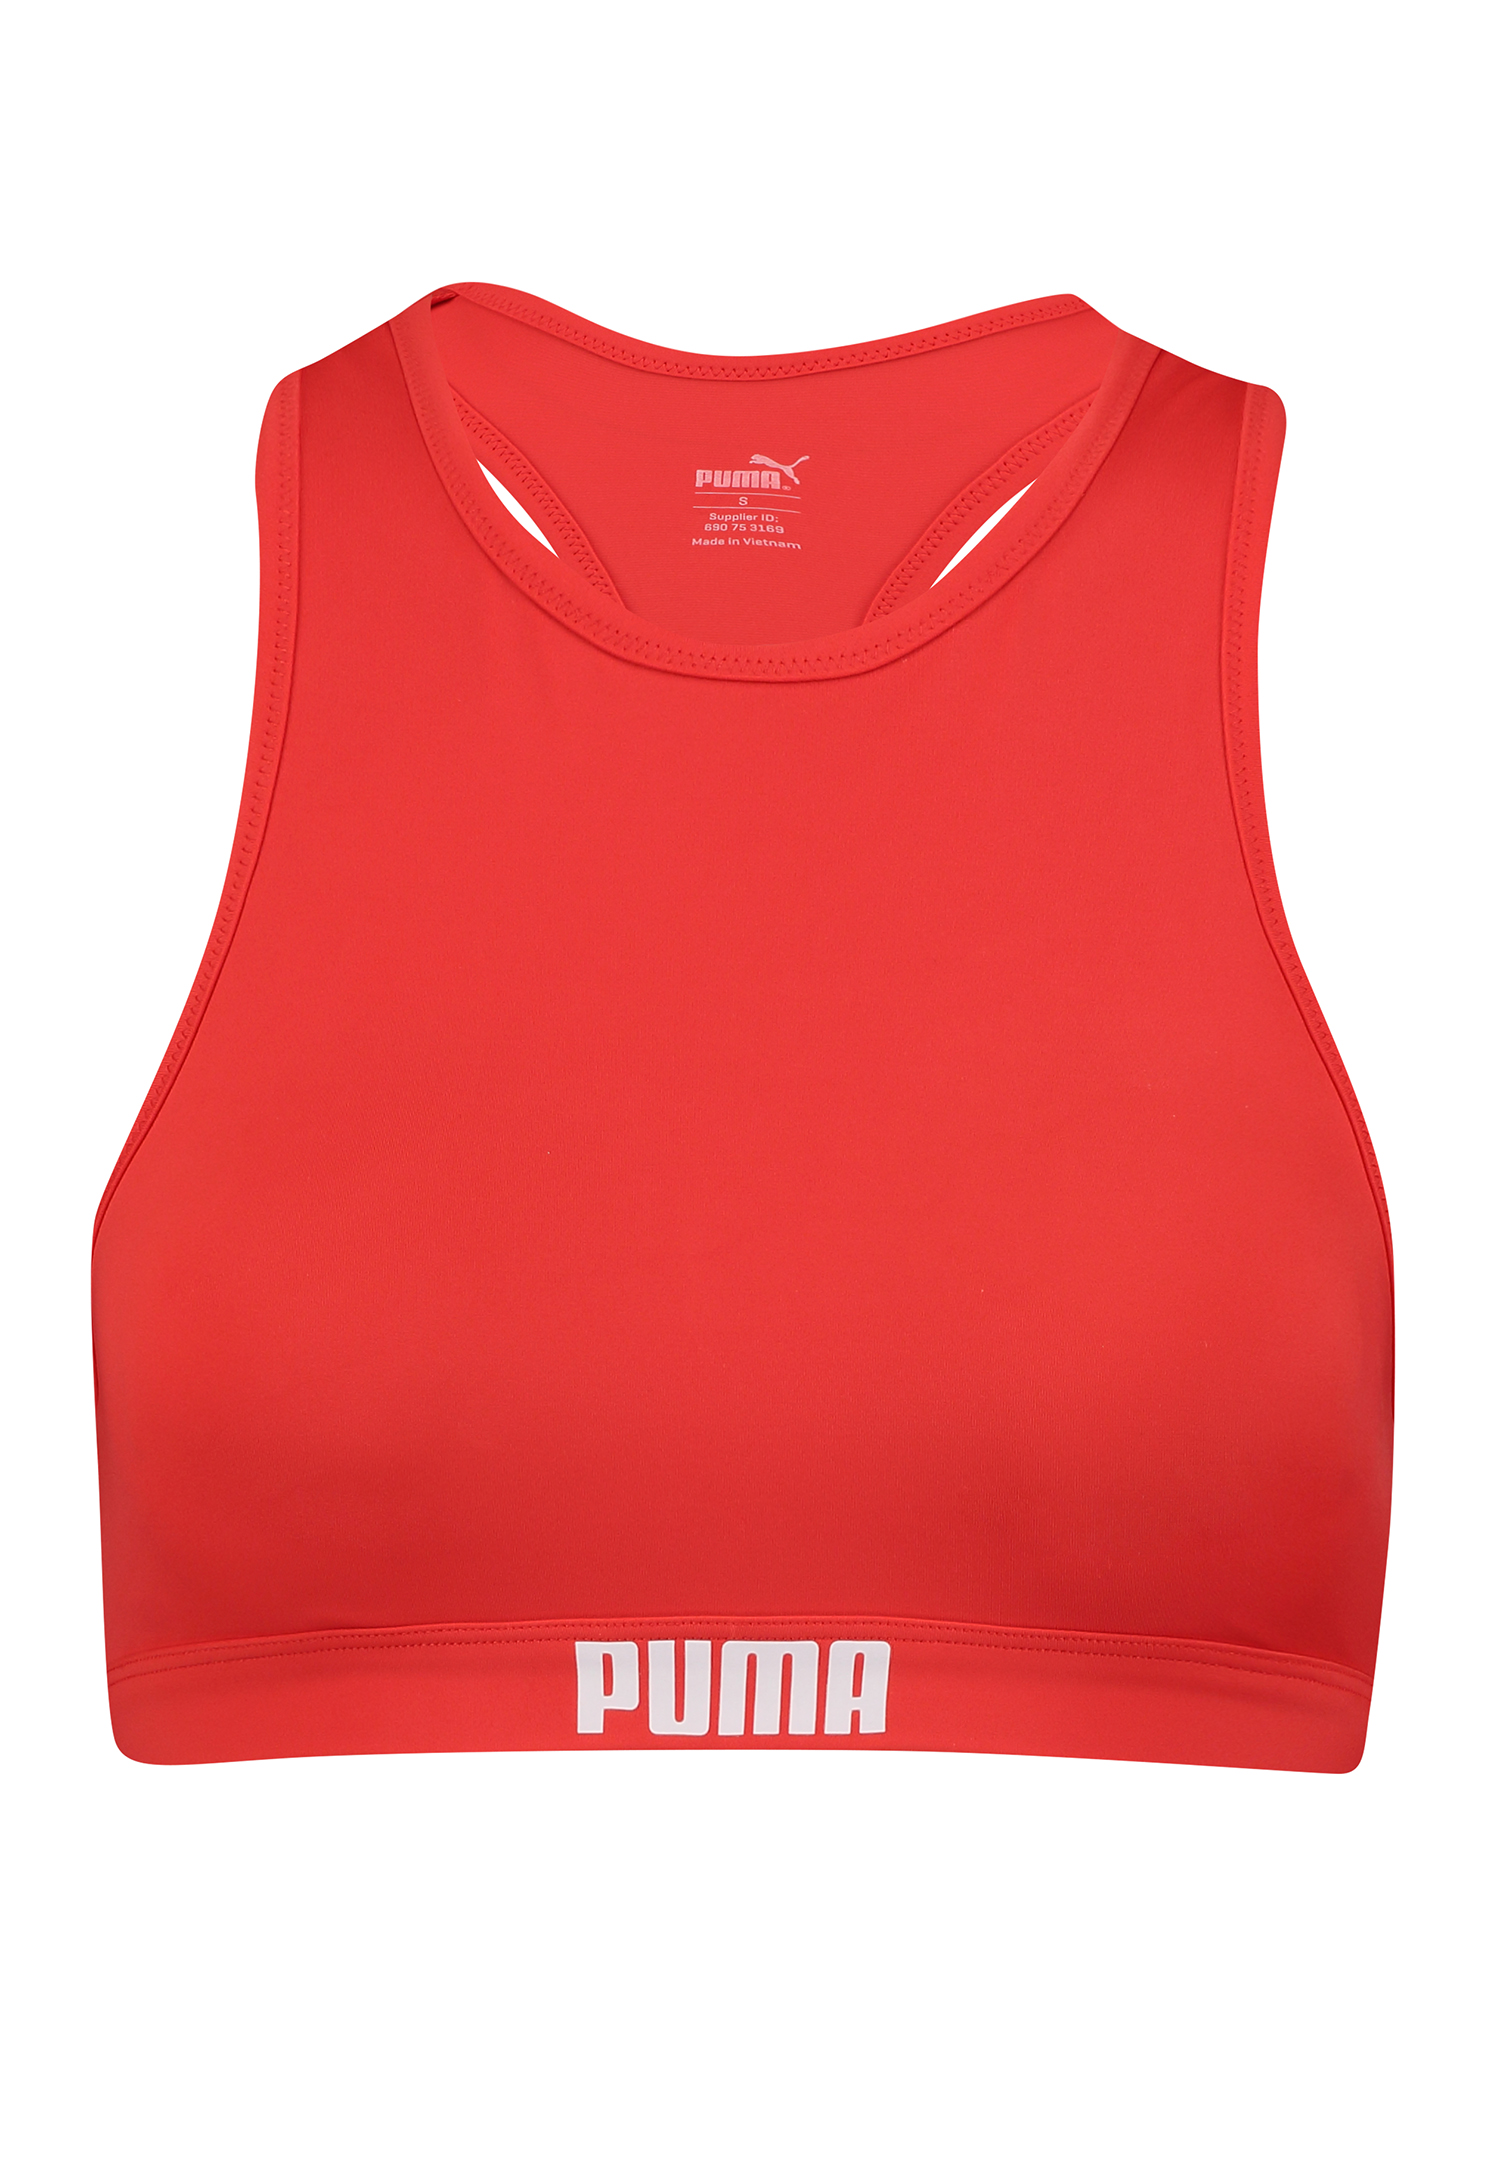 Купальник Puma SWIM WOMEN RACERBACK TOP, красный цена и фото